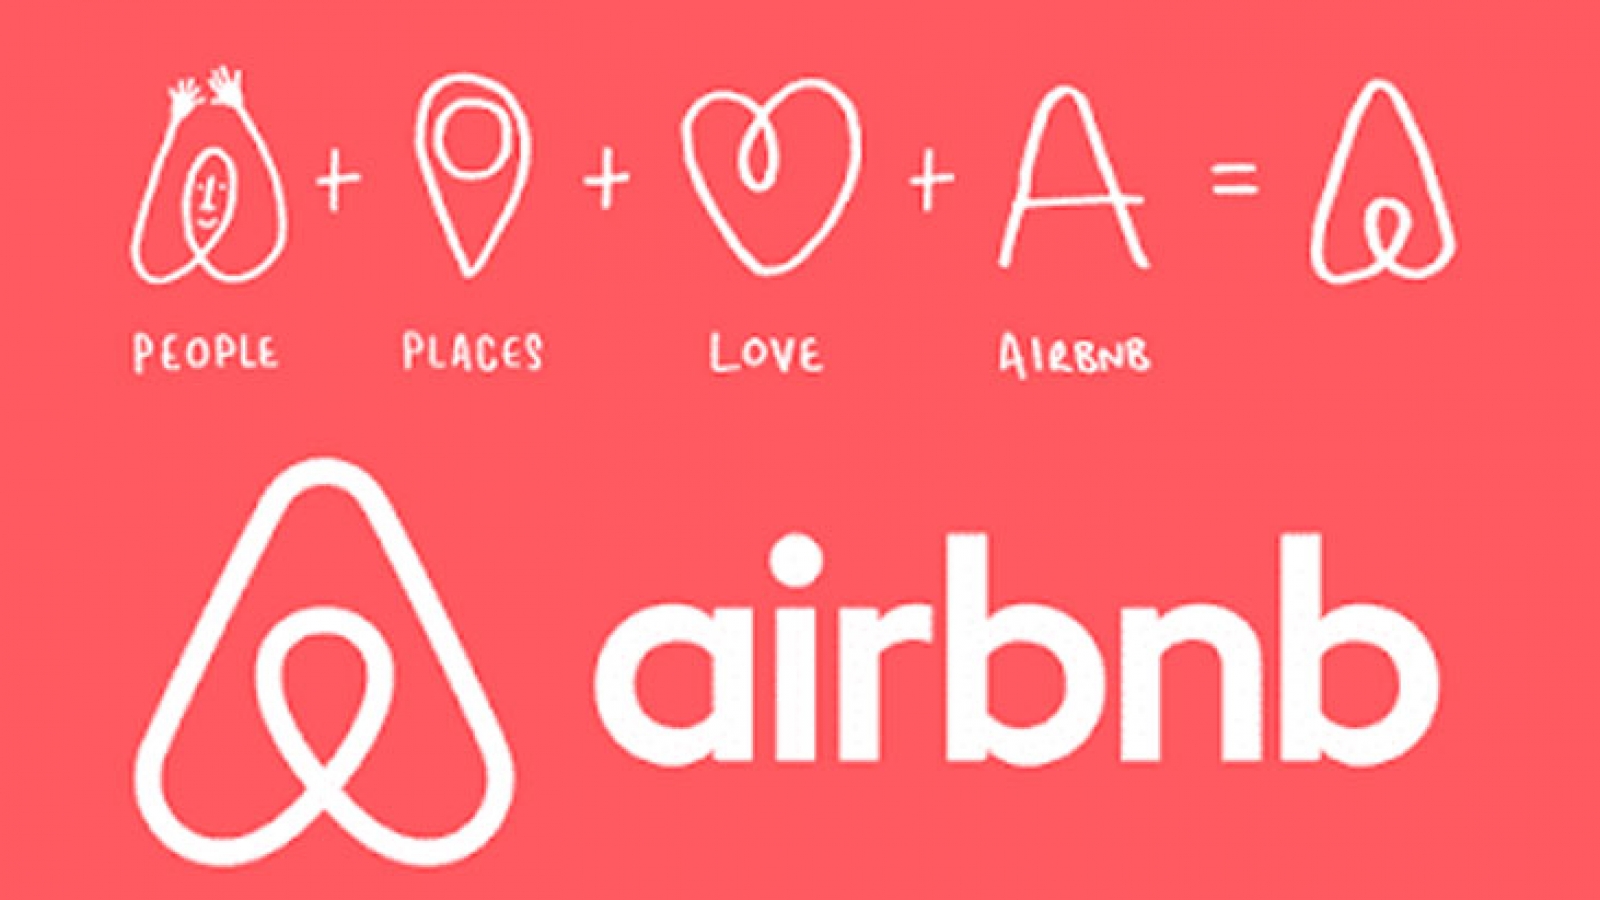 Cartel con el logotipo de Airbnb en relación a cómo posicionar tus apartamentos turísticos en Airbnb